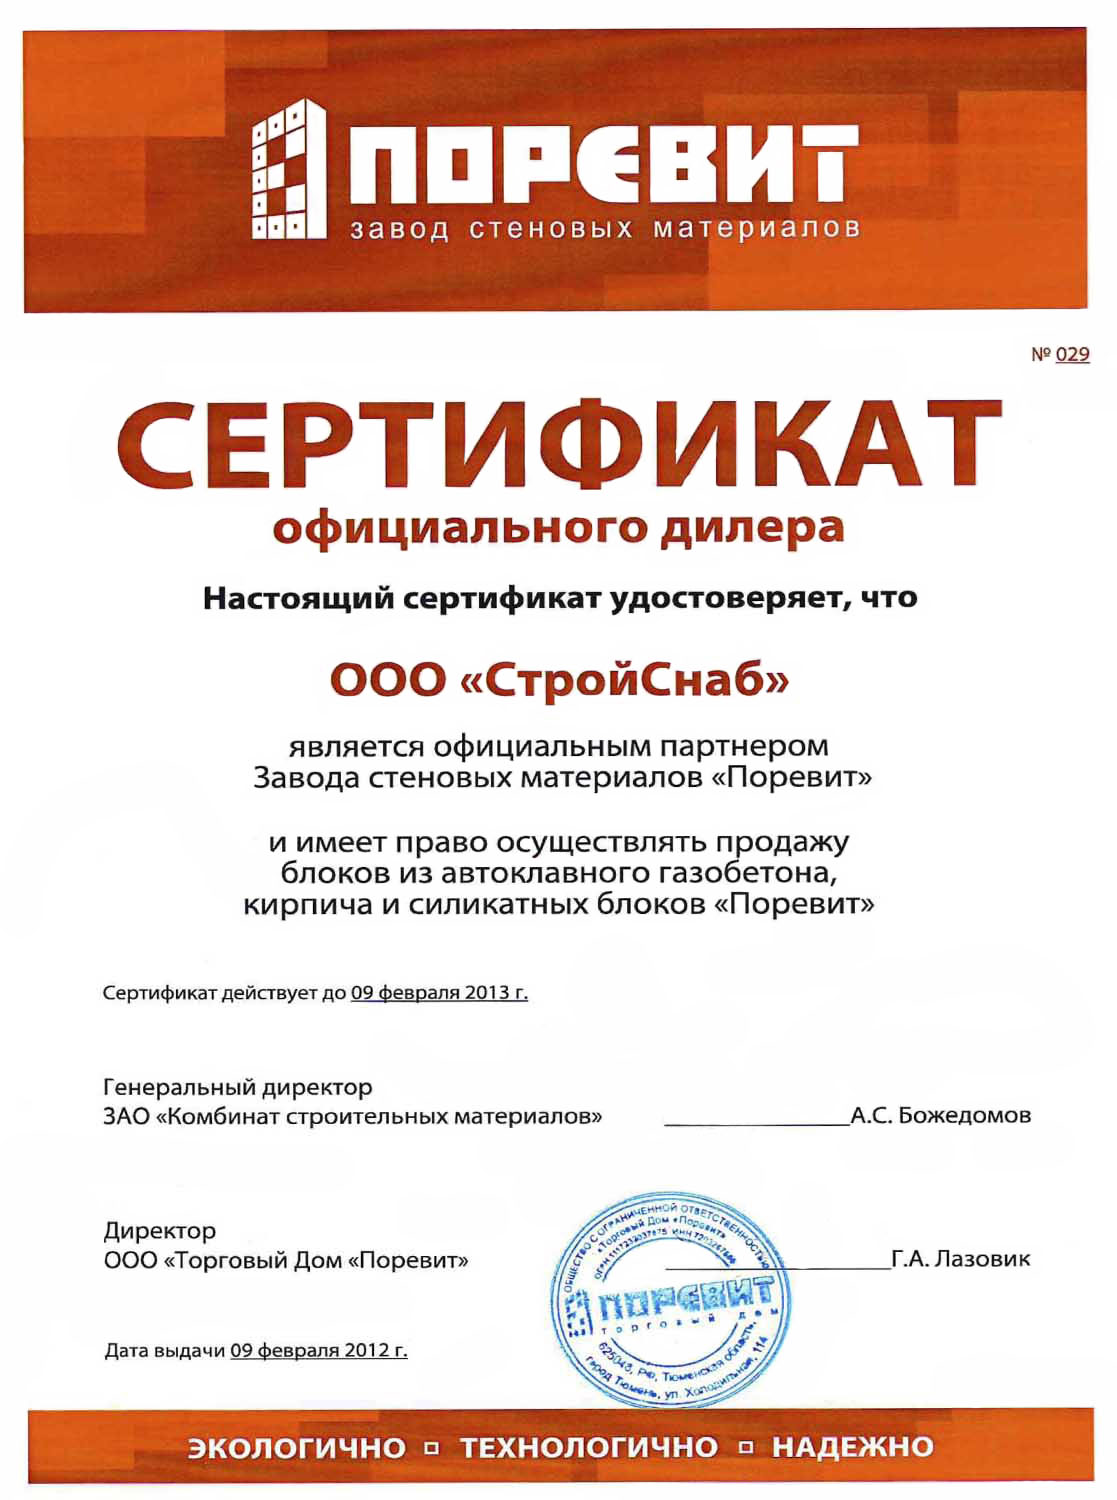 Сертификат официального дилера завода ПОРЕВИТ 2012 г